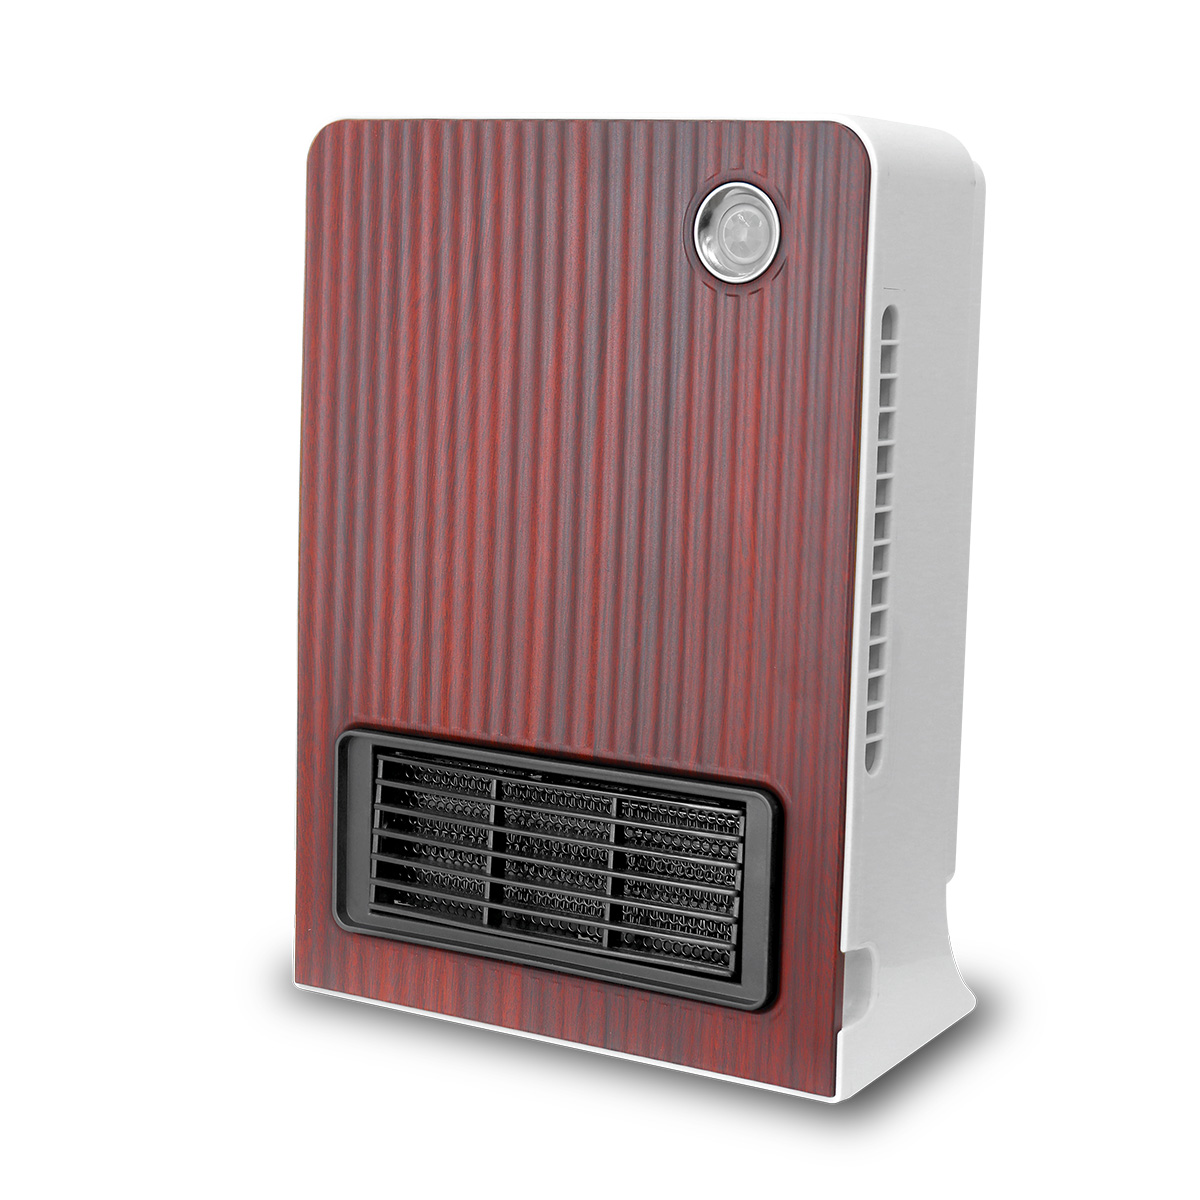 セラミックヒーター 全5色 チャイルドロック 人感センサー 暖房器具 温風 送風 小型 セラミックフ...